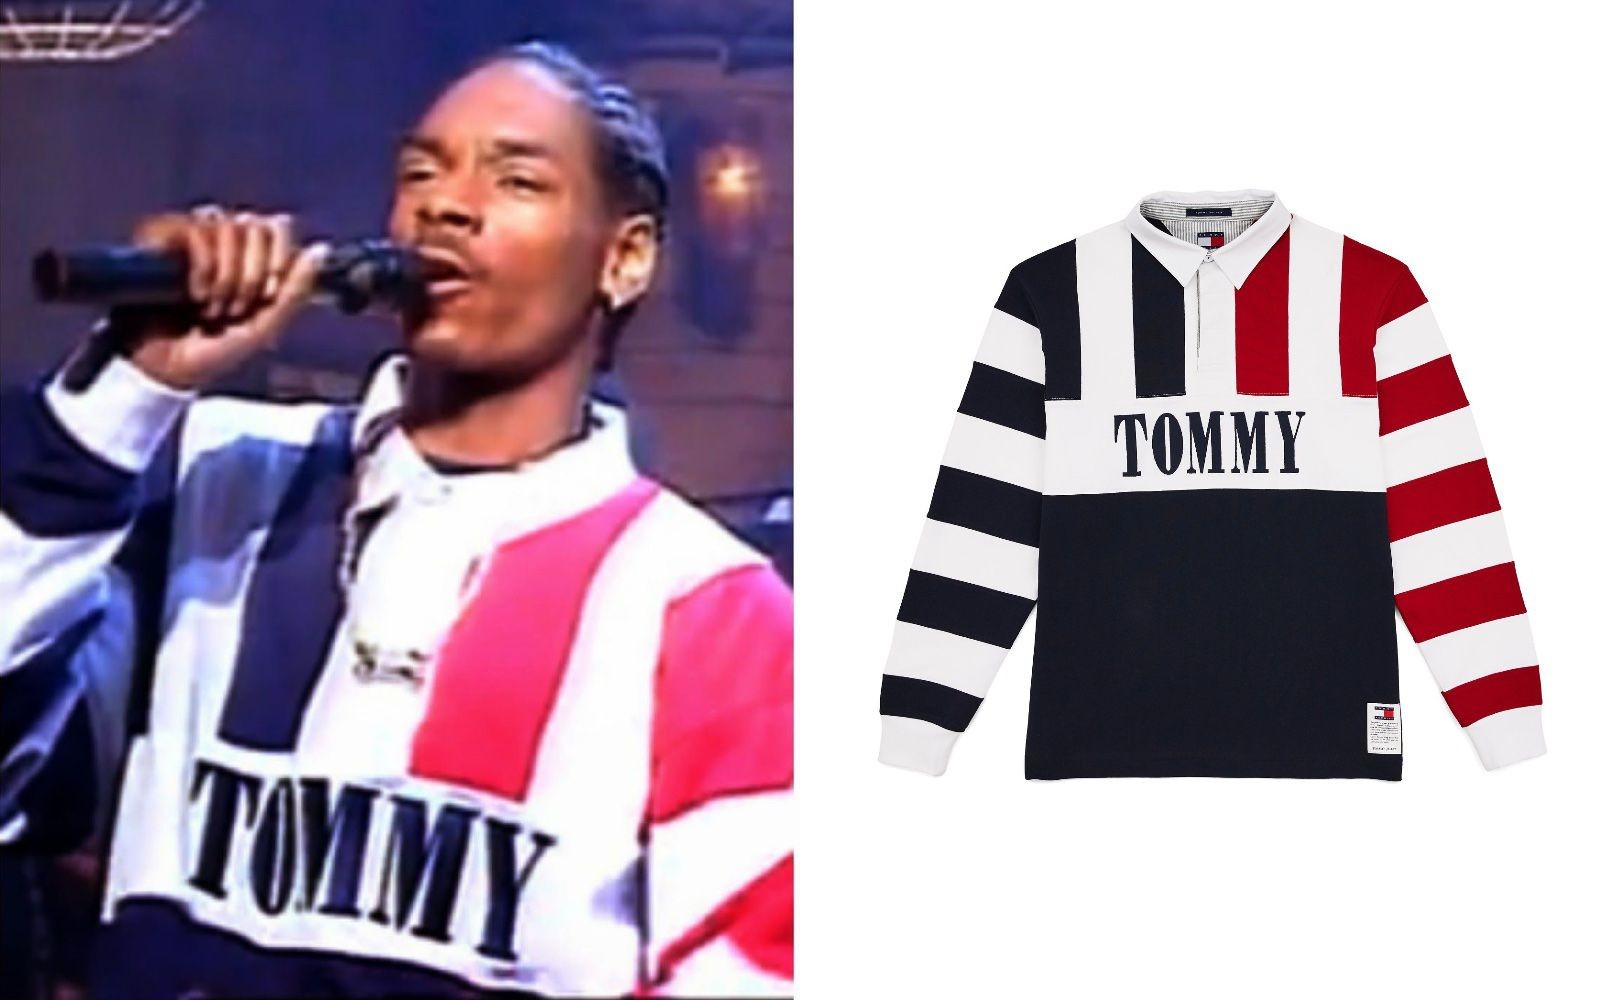 Rapper Snoop Dogg và chiếc áo biểu tượng của hãng thời trang Tommy Hilfiger